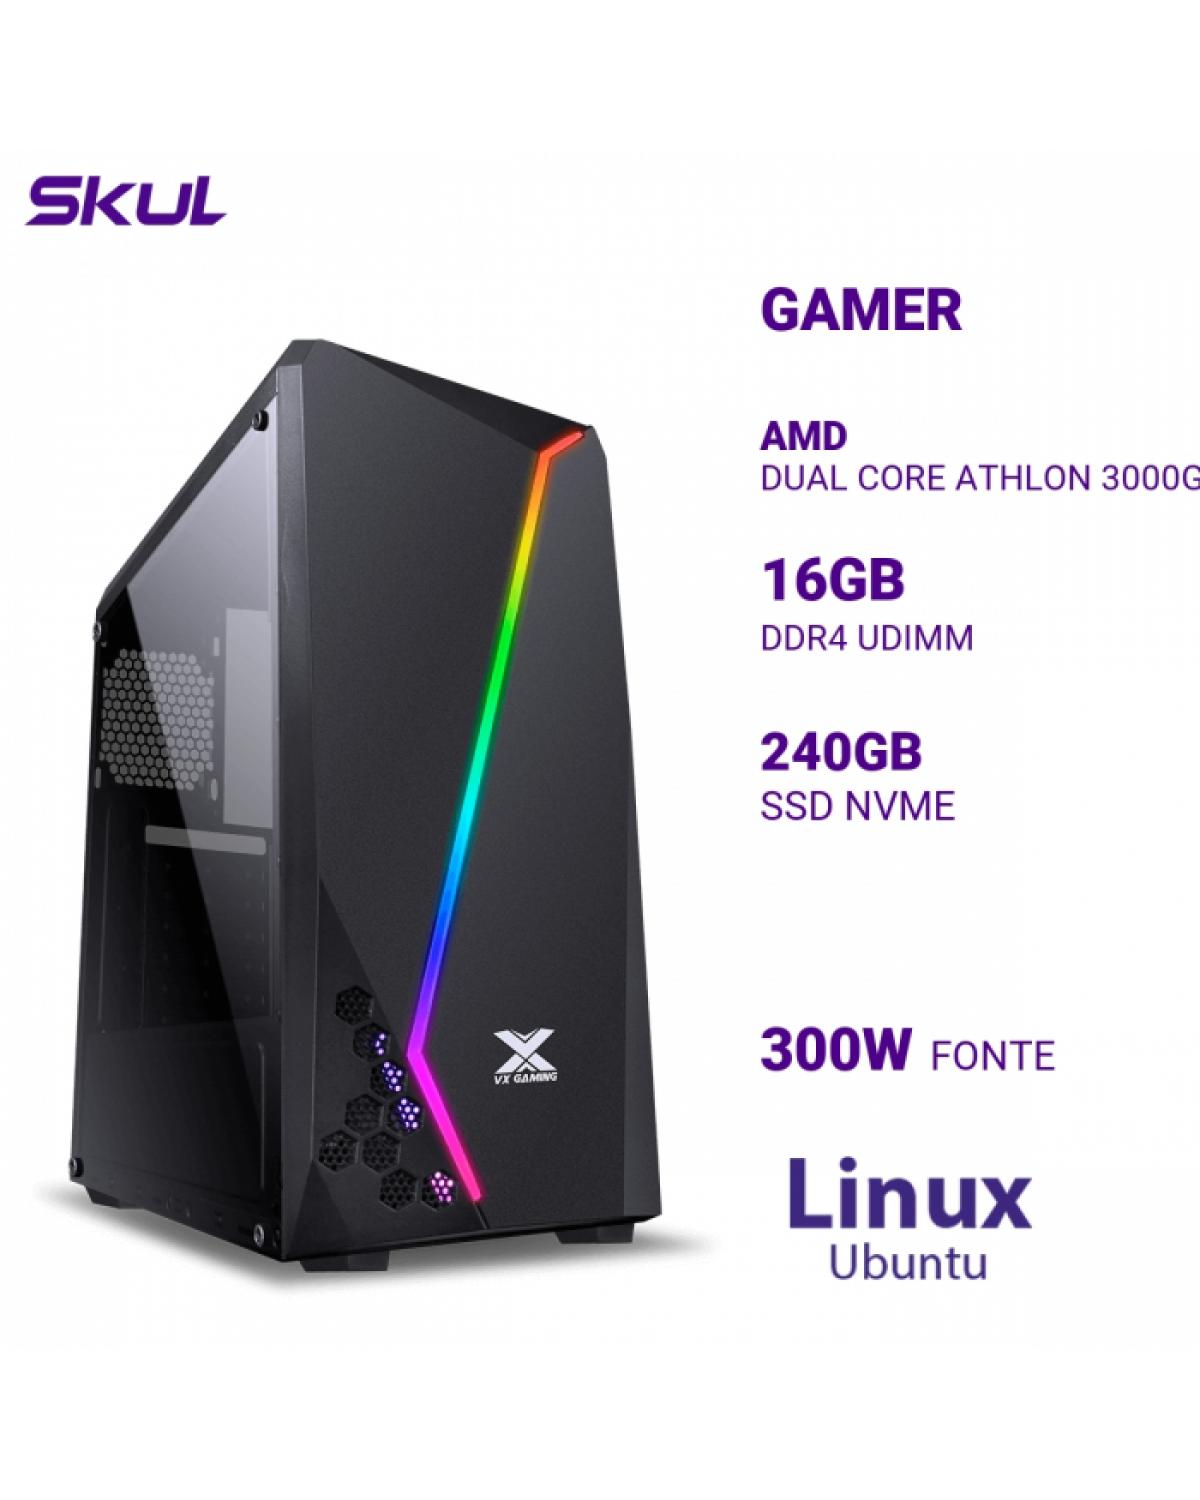 COMPUTADOR GAMER 1000 DUAL CORE ATHLON 3000G 3.50GHZ MEM 16GB DDR4 SSD 240GB NVME FONTE 300W LINUX